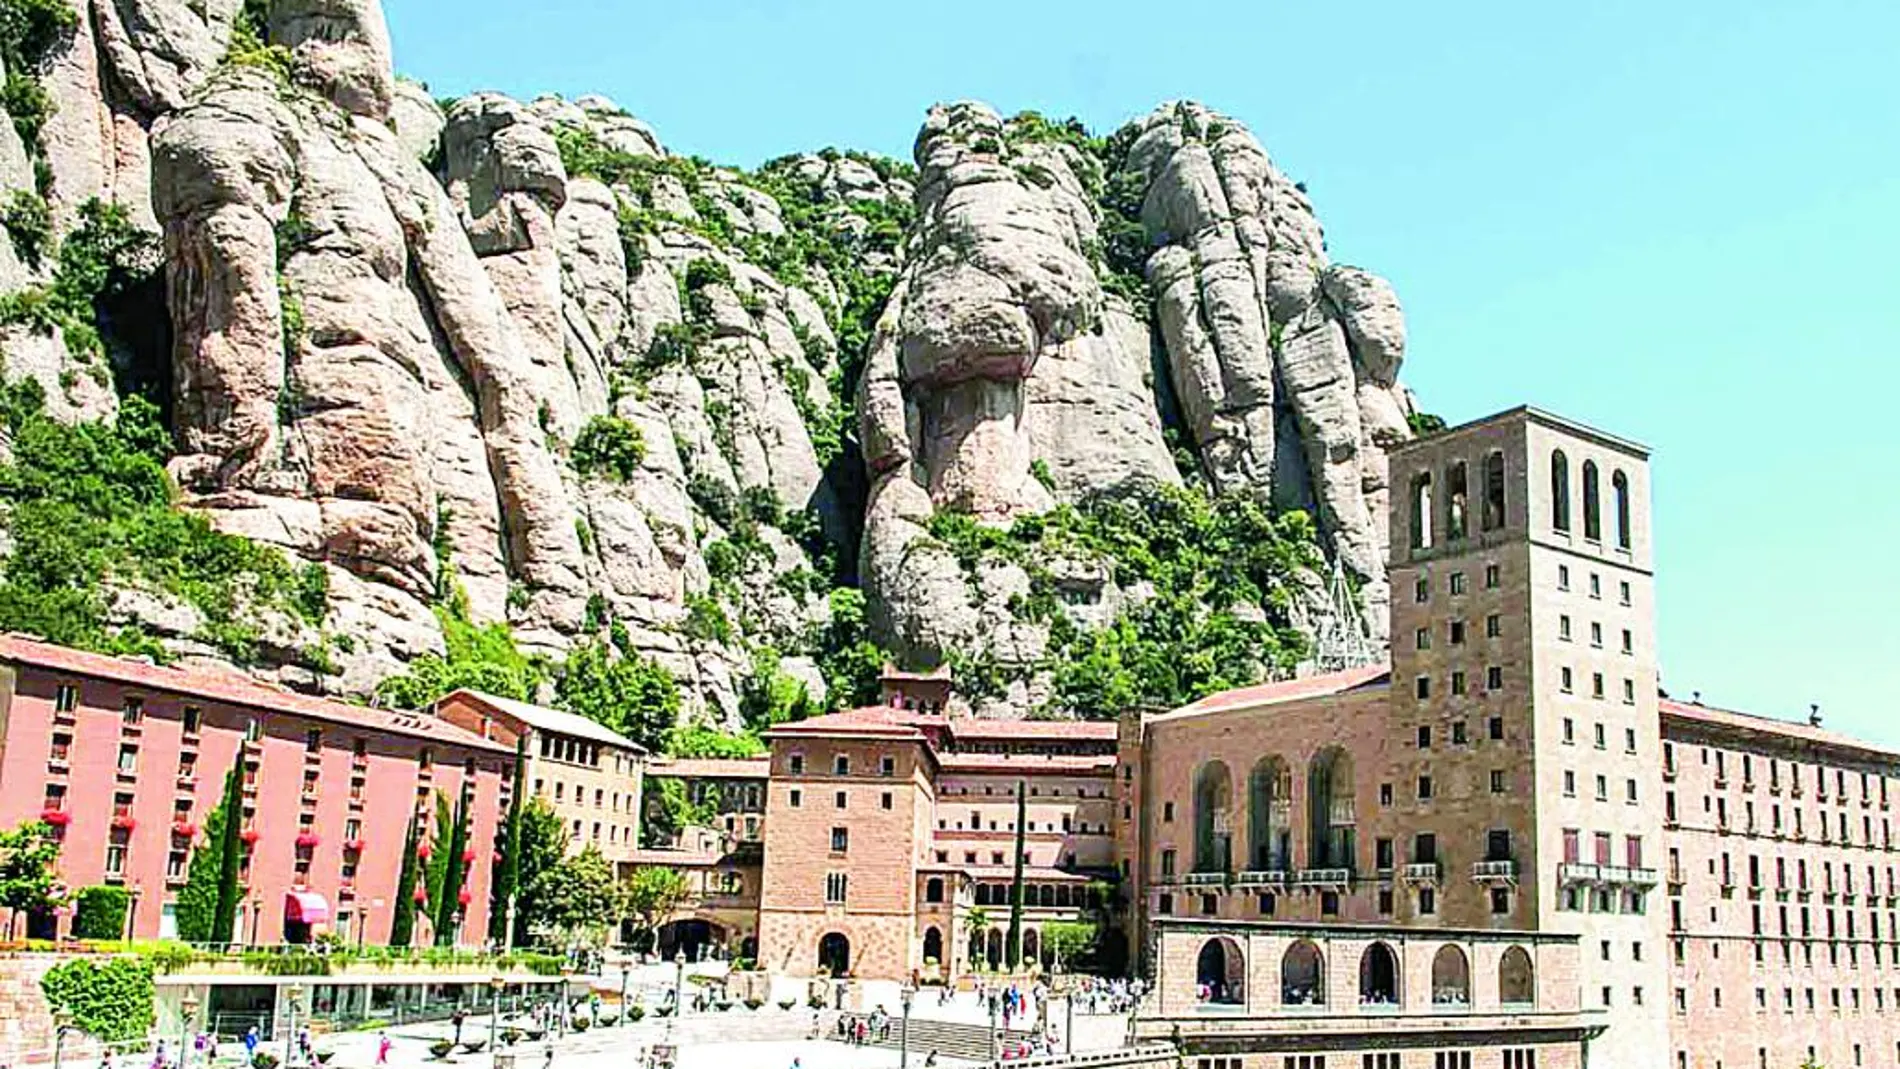 Durante el día de hoy solo se podrá llegar hasta el monasterio de Montserrat, pero no será posible ir de excursión